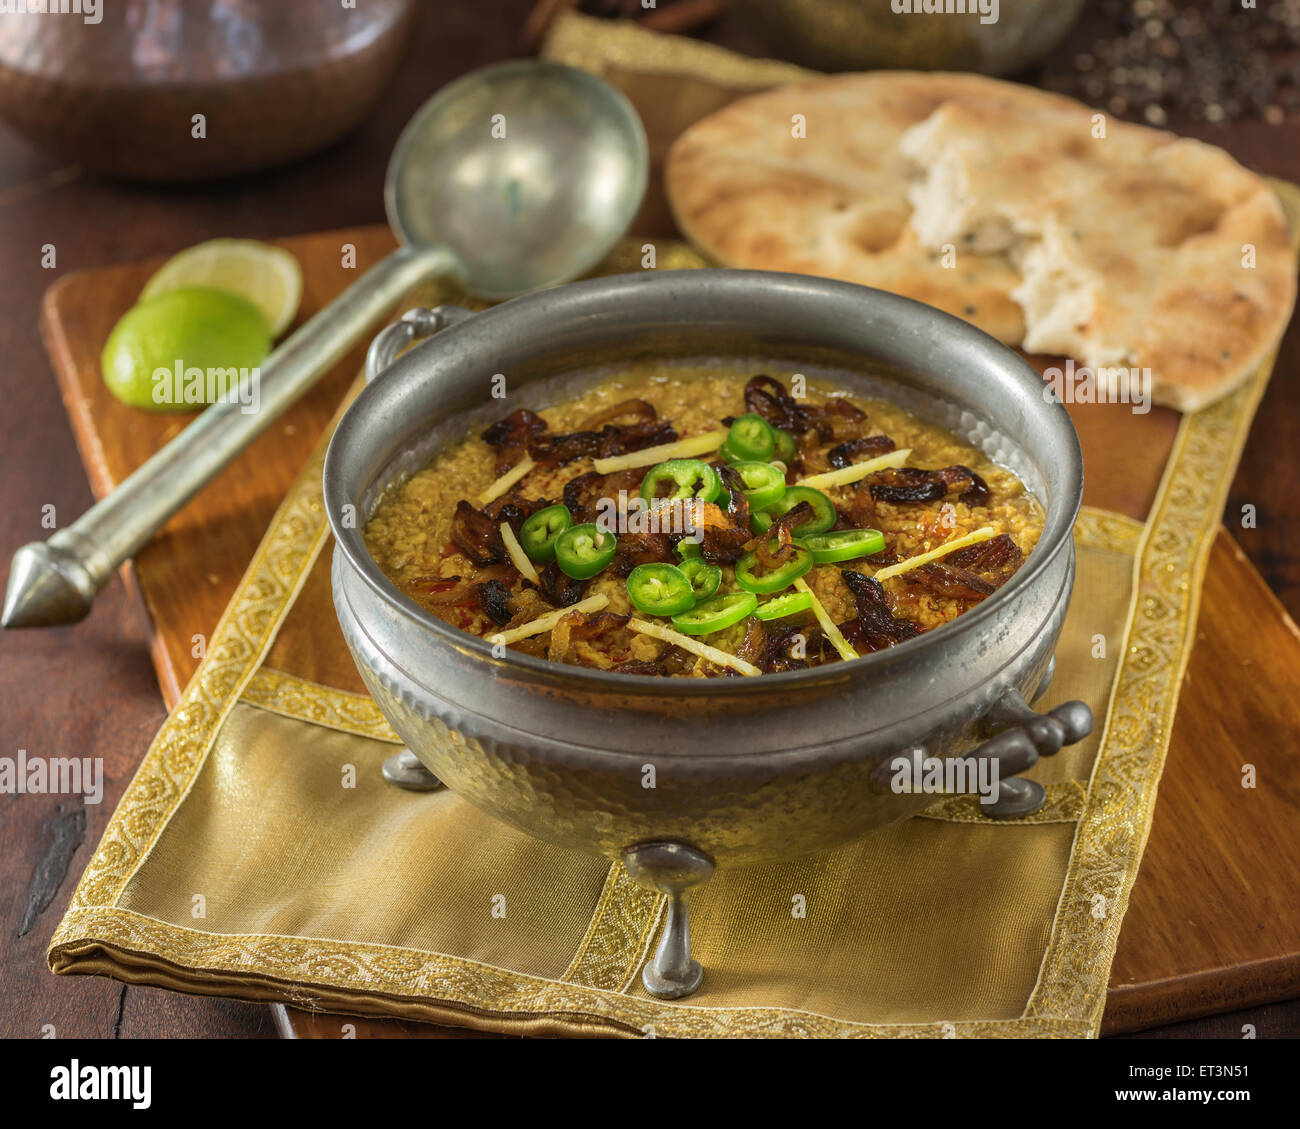 Haleem. La viande, les lentilles et l'orge. Moyen-orient et l'Inde l'alimentation Banque D'Images